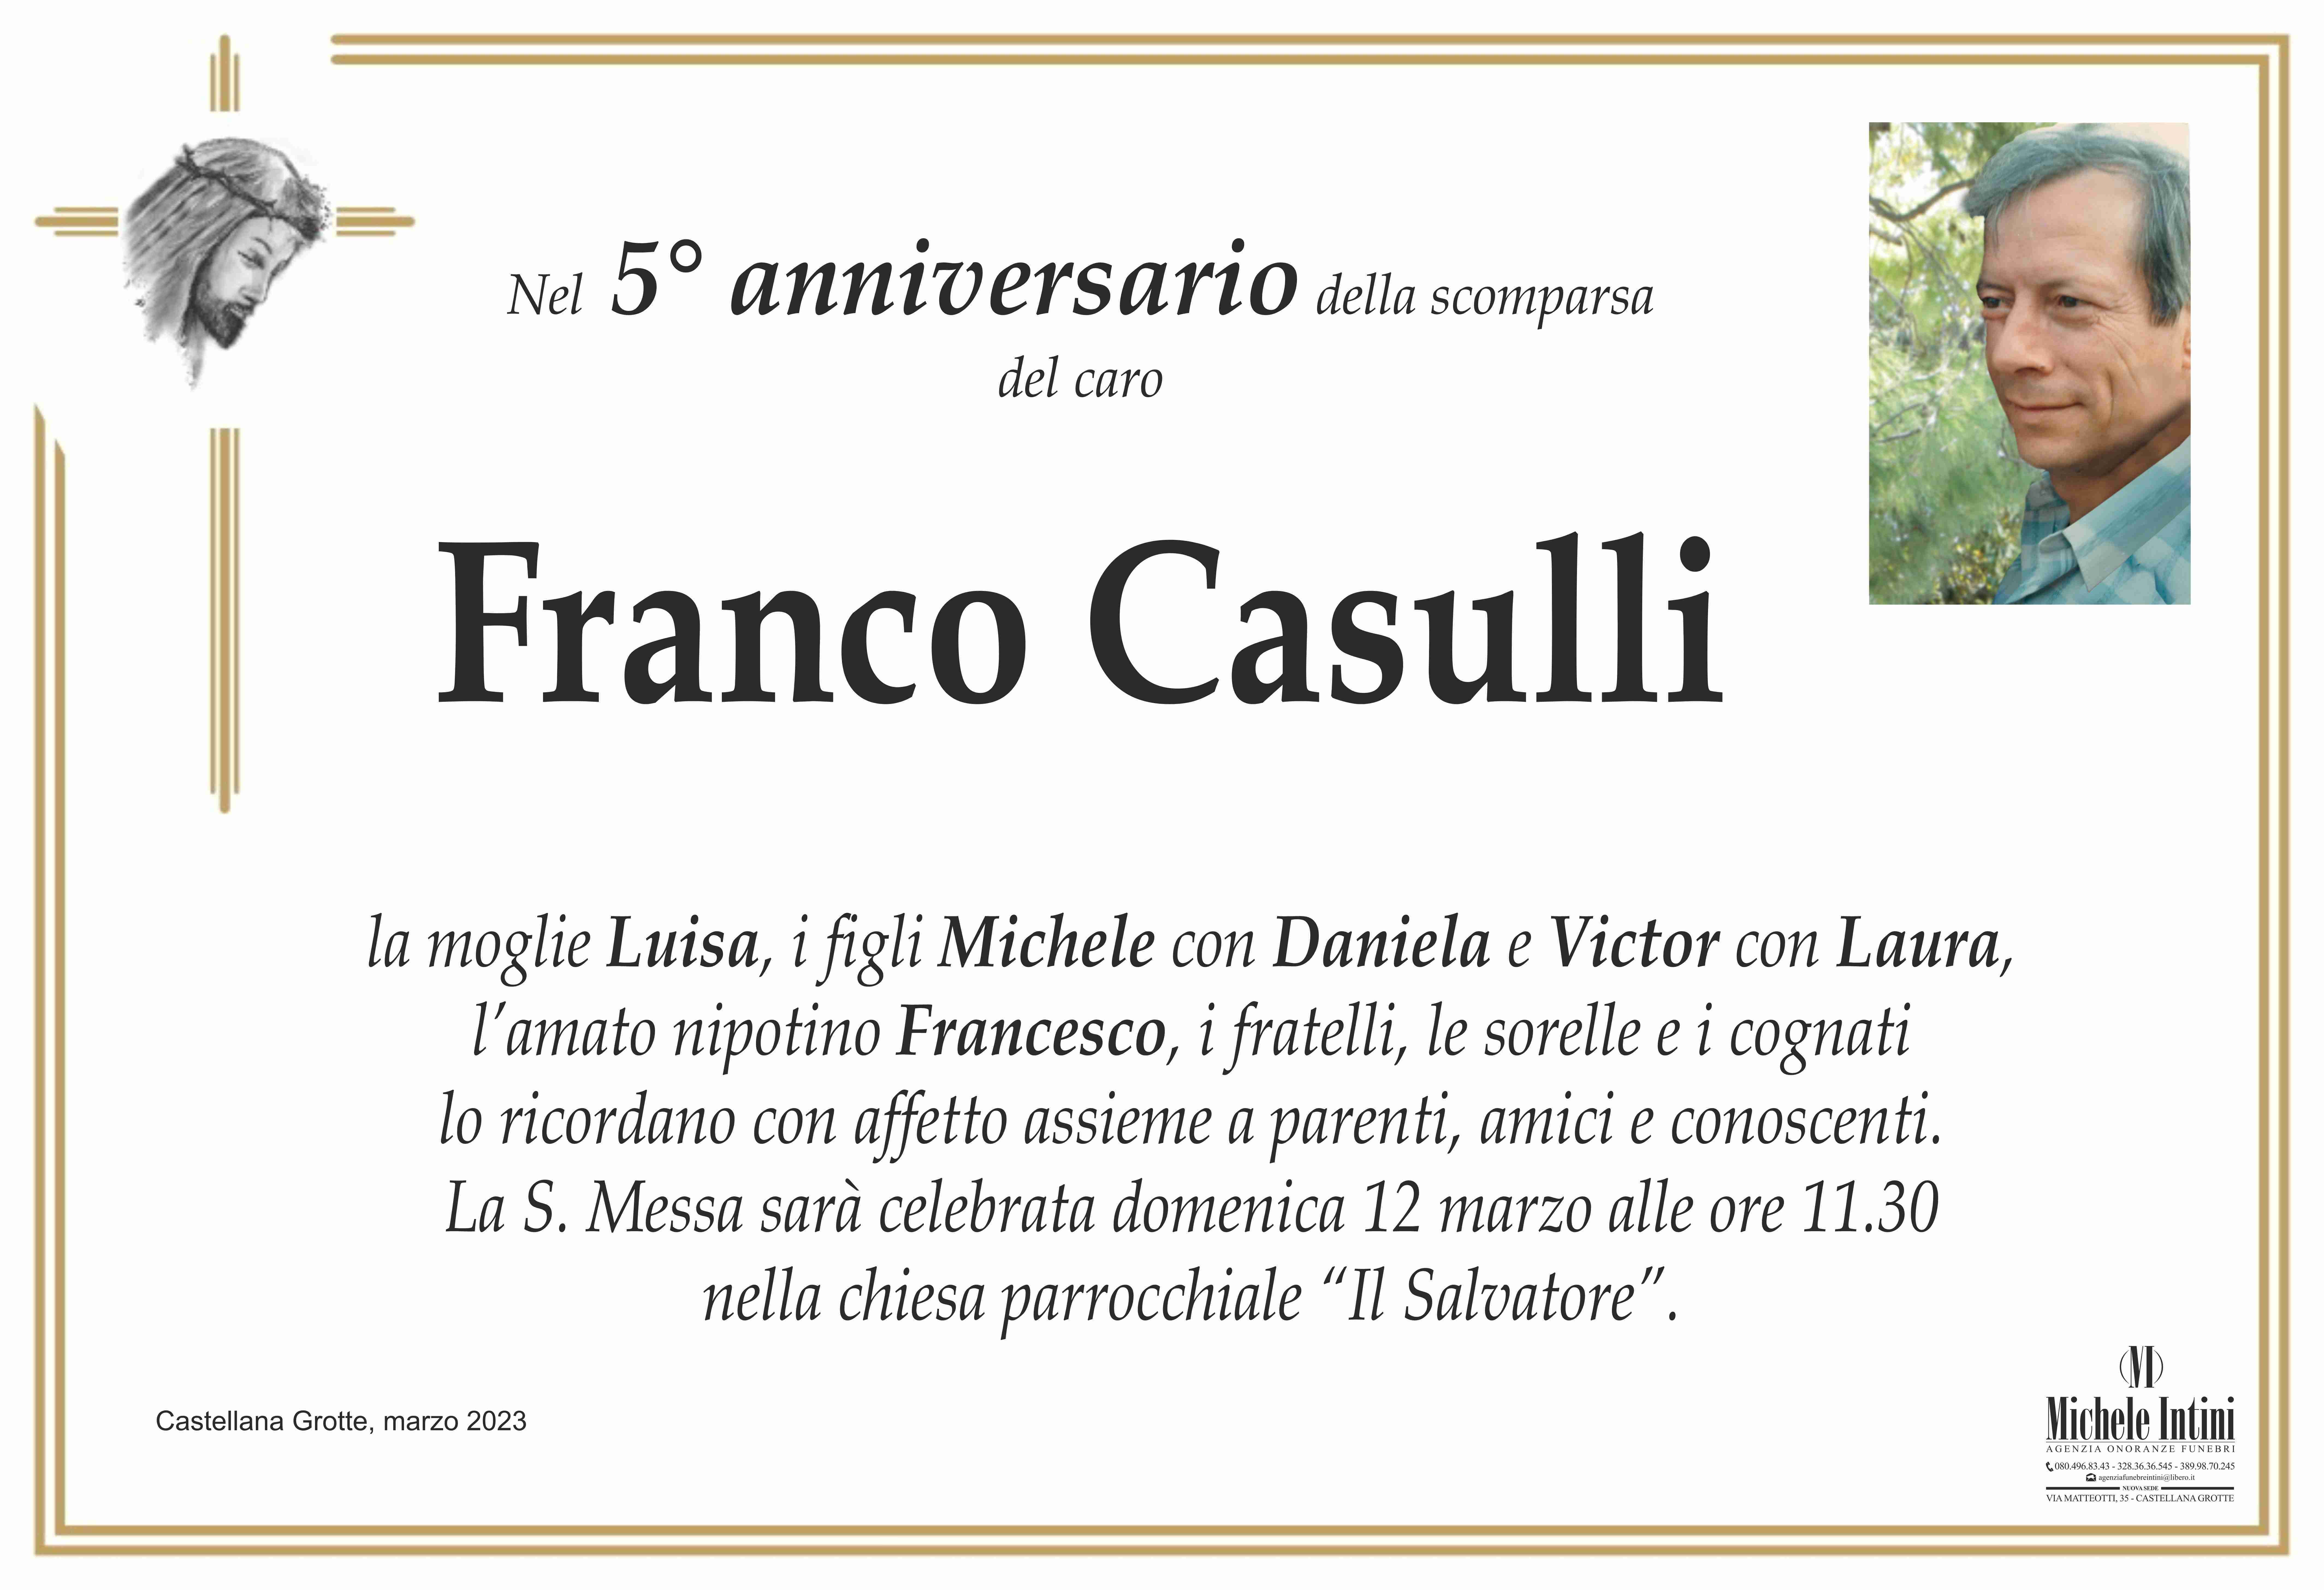 Franco Casulli